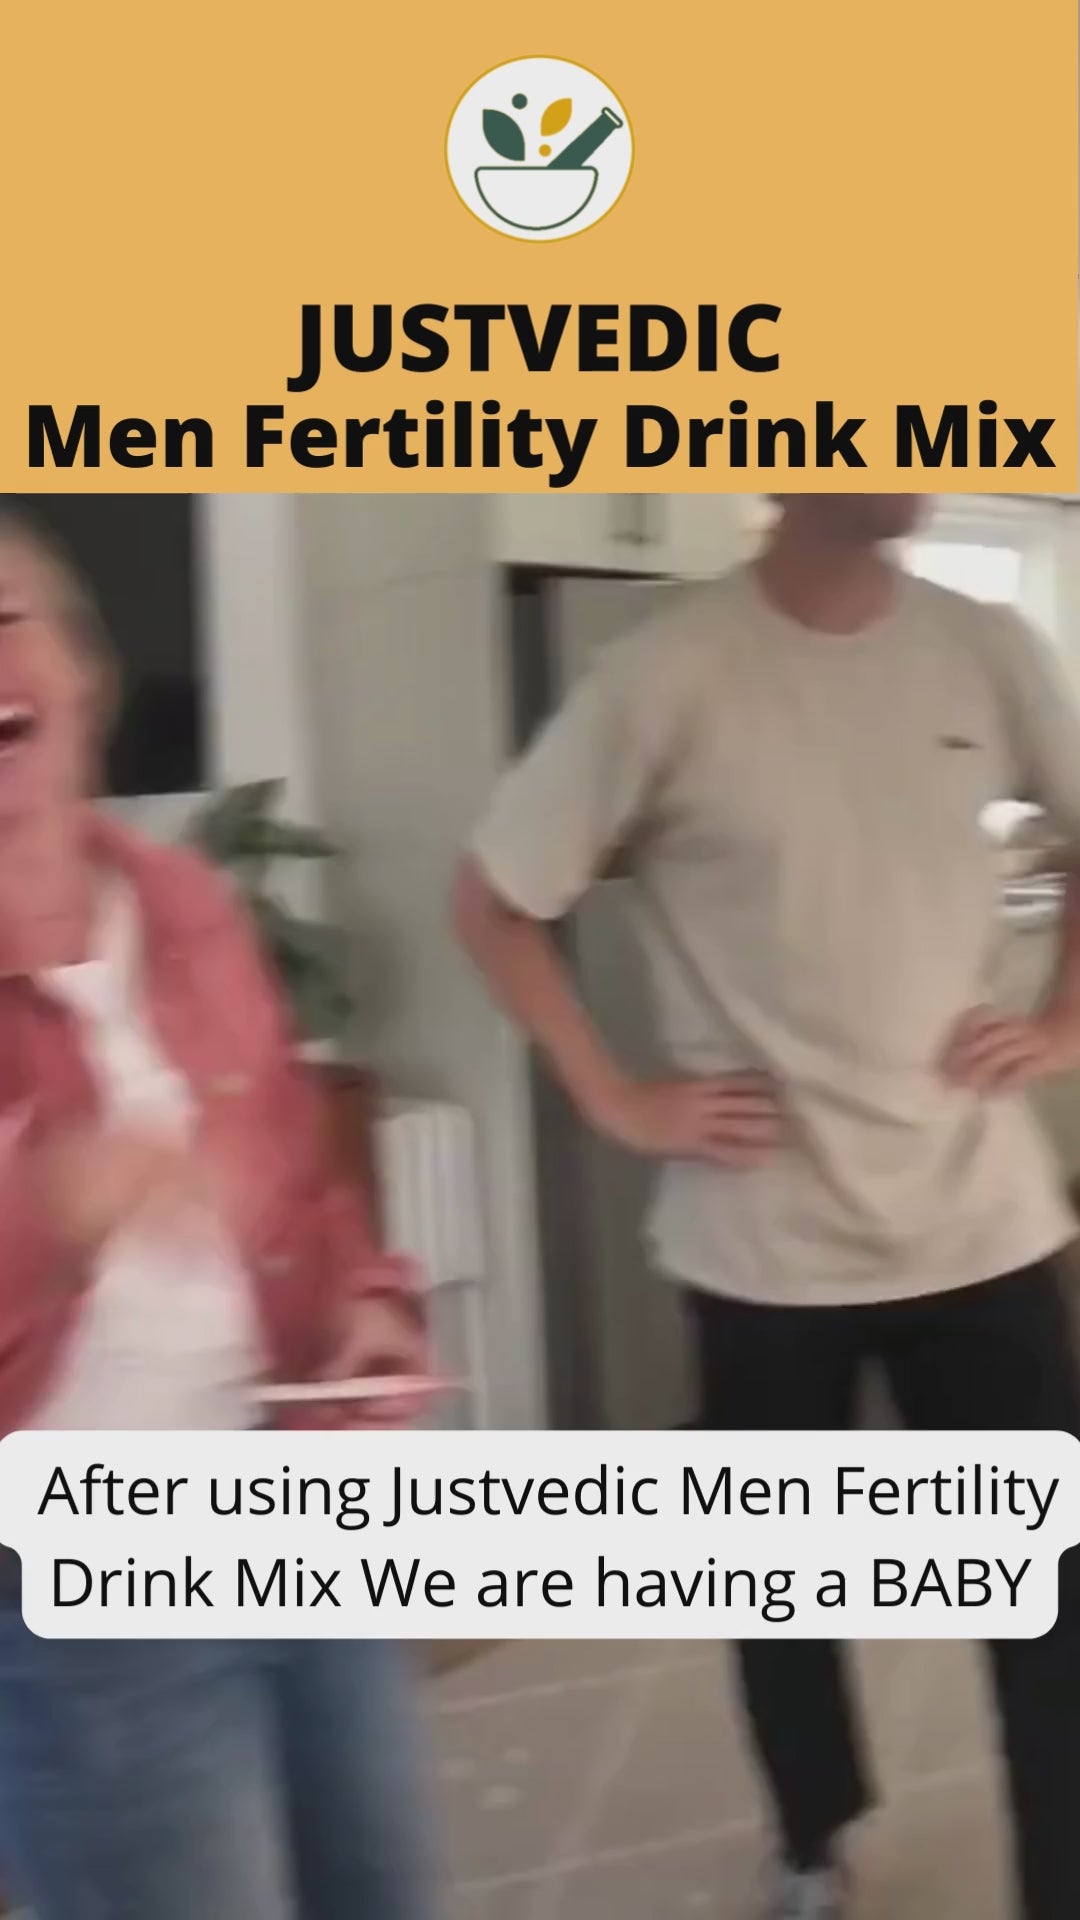 Justvedic Men Fertility Drink mix